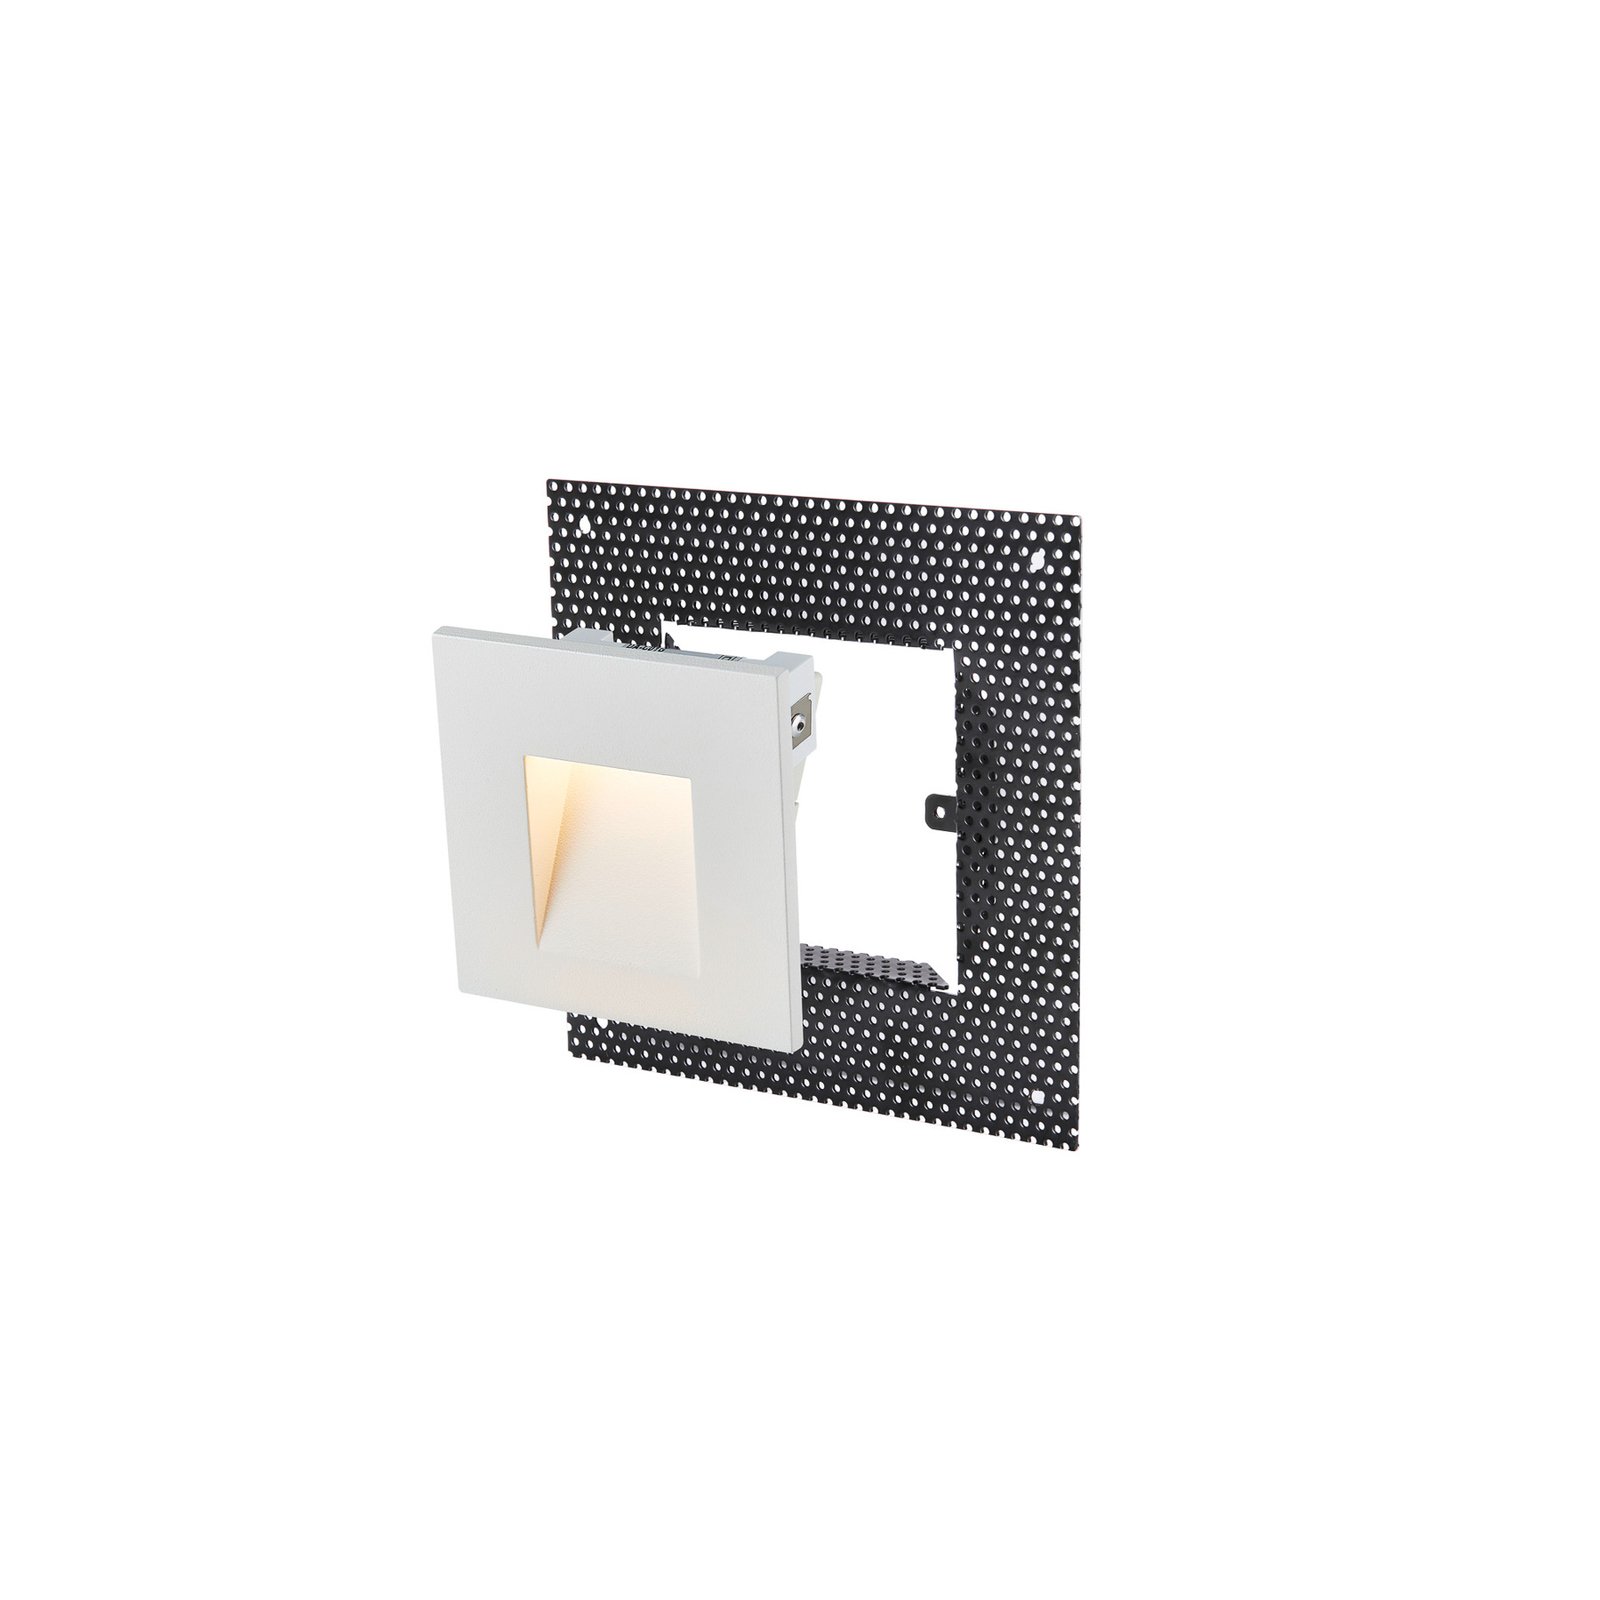 SLV LED iebūvējamais sienas apgaismojums Mobala, balts, alumīnijs, 3000 K